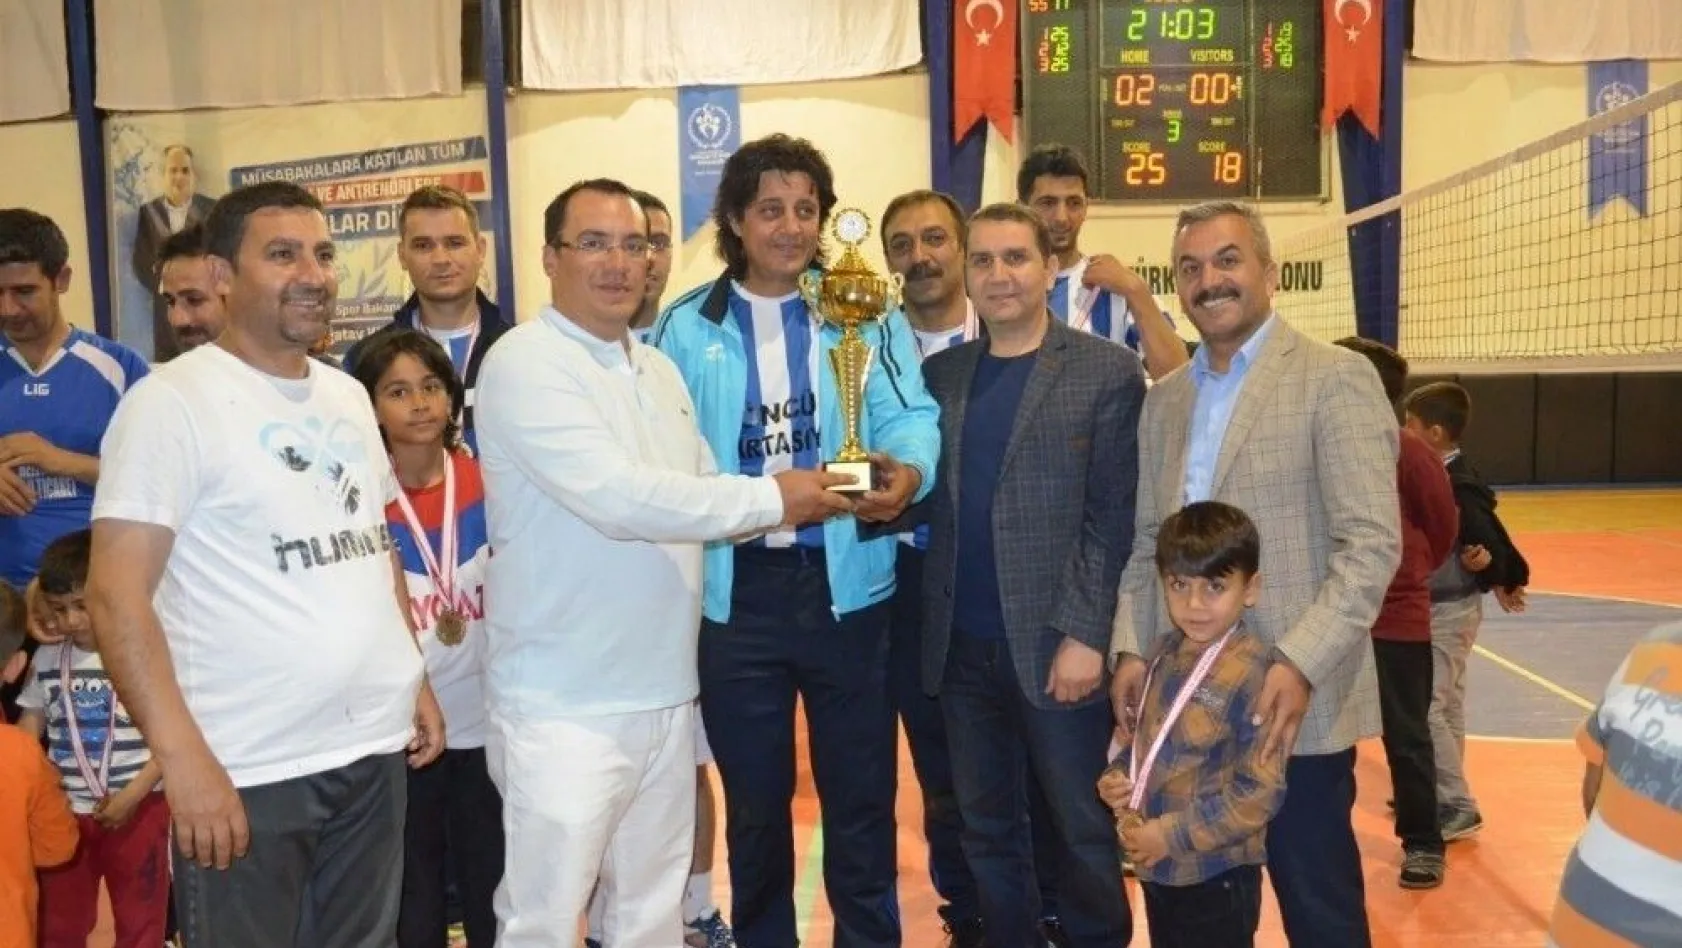 Kahta Belediyesi Voleybol Takımı şampiyon oldu
